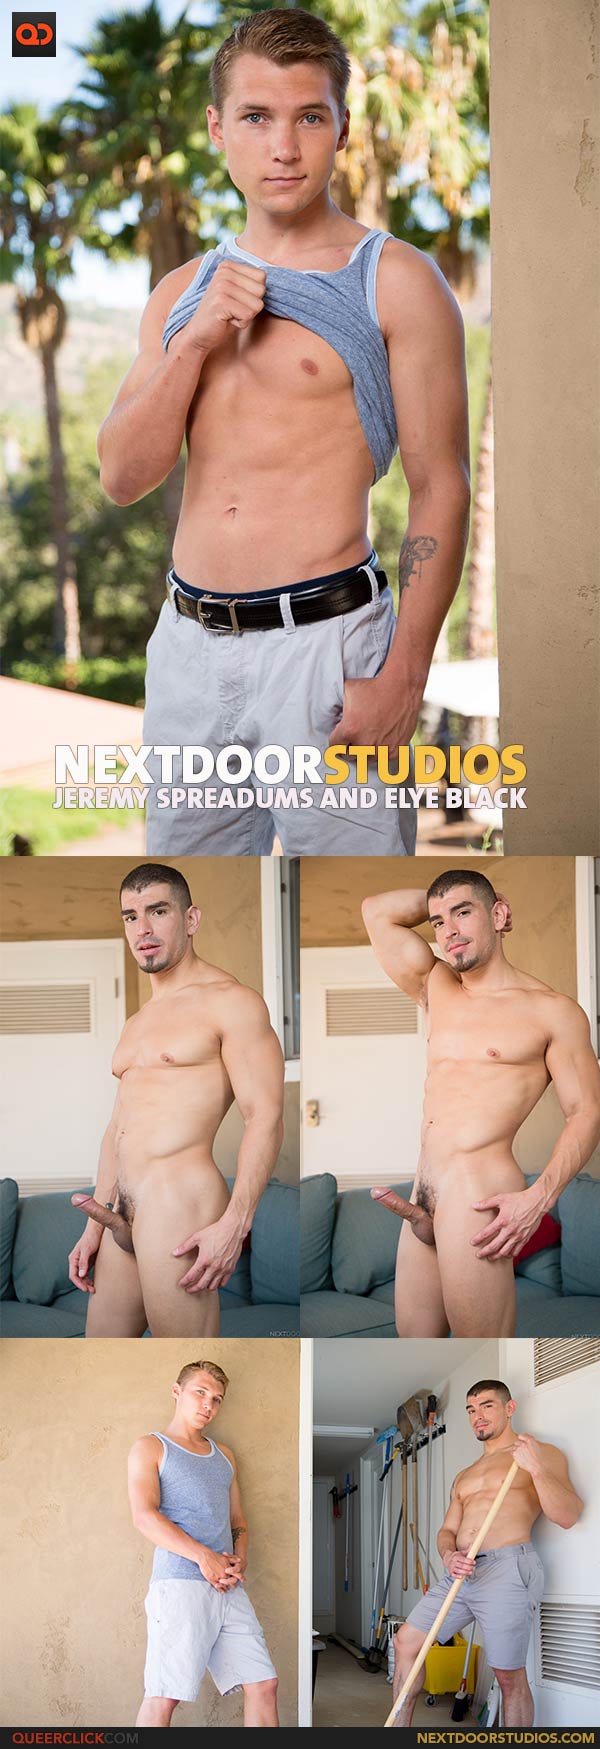 Next Door Studios:  Jeremy Spreadums and Elye Black